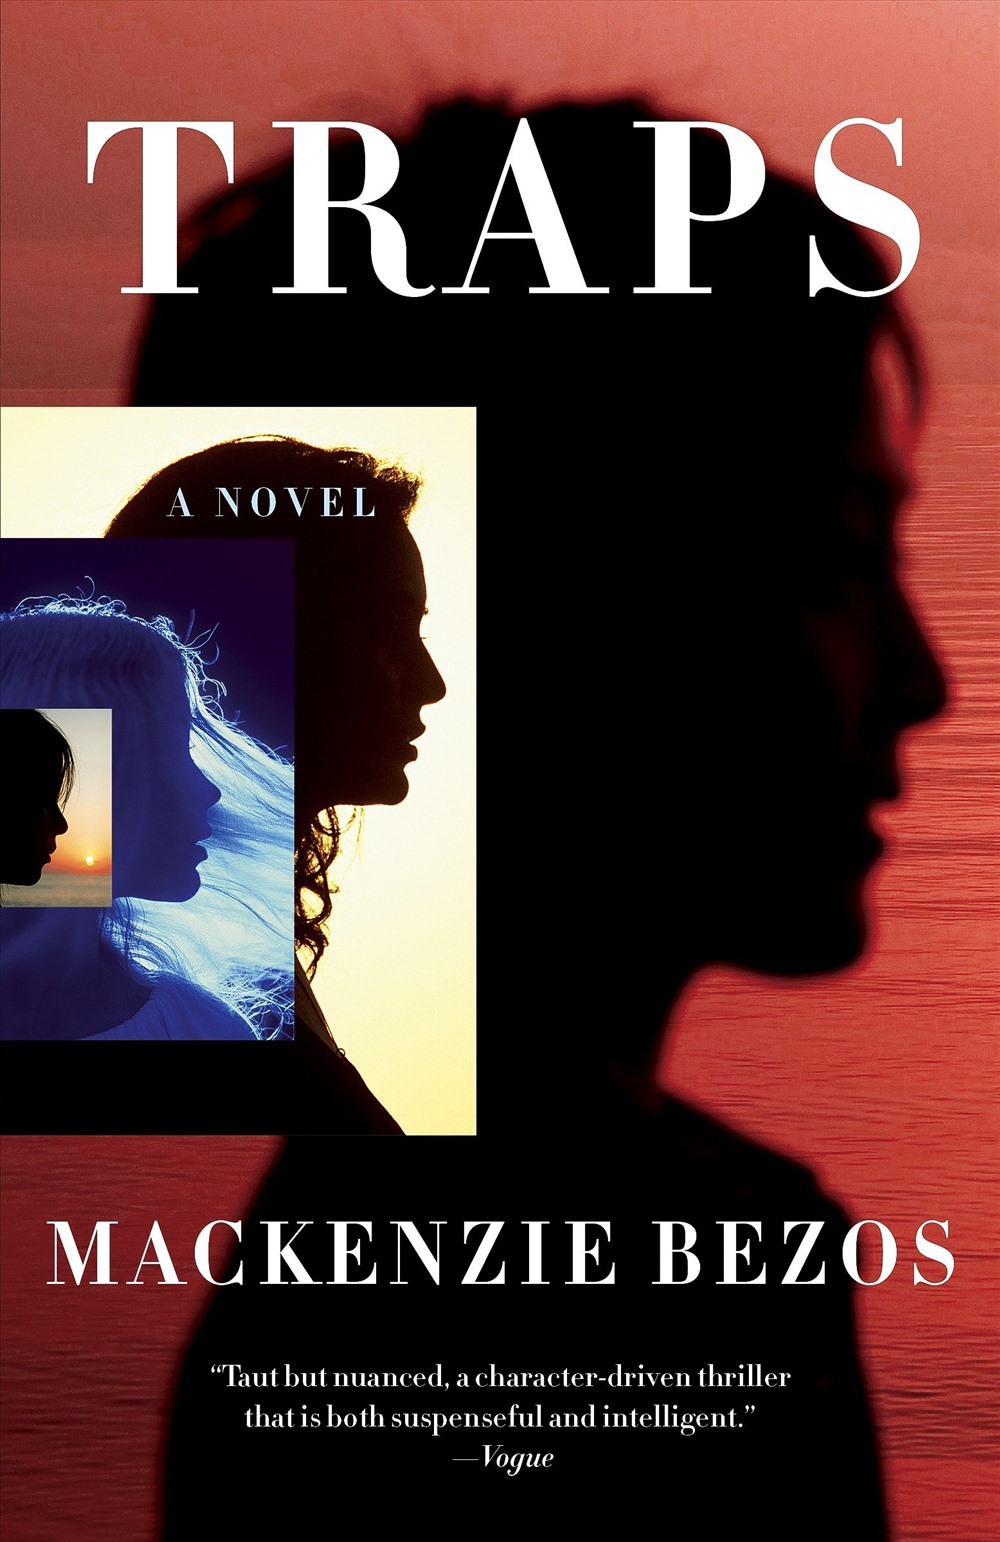 Sau khi cuốn “Traps” được xuất bản vào năm 2013, MacKenzie đã không xuất bản thêm cuốn nào mới và bán trên Amazon.